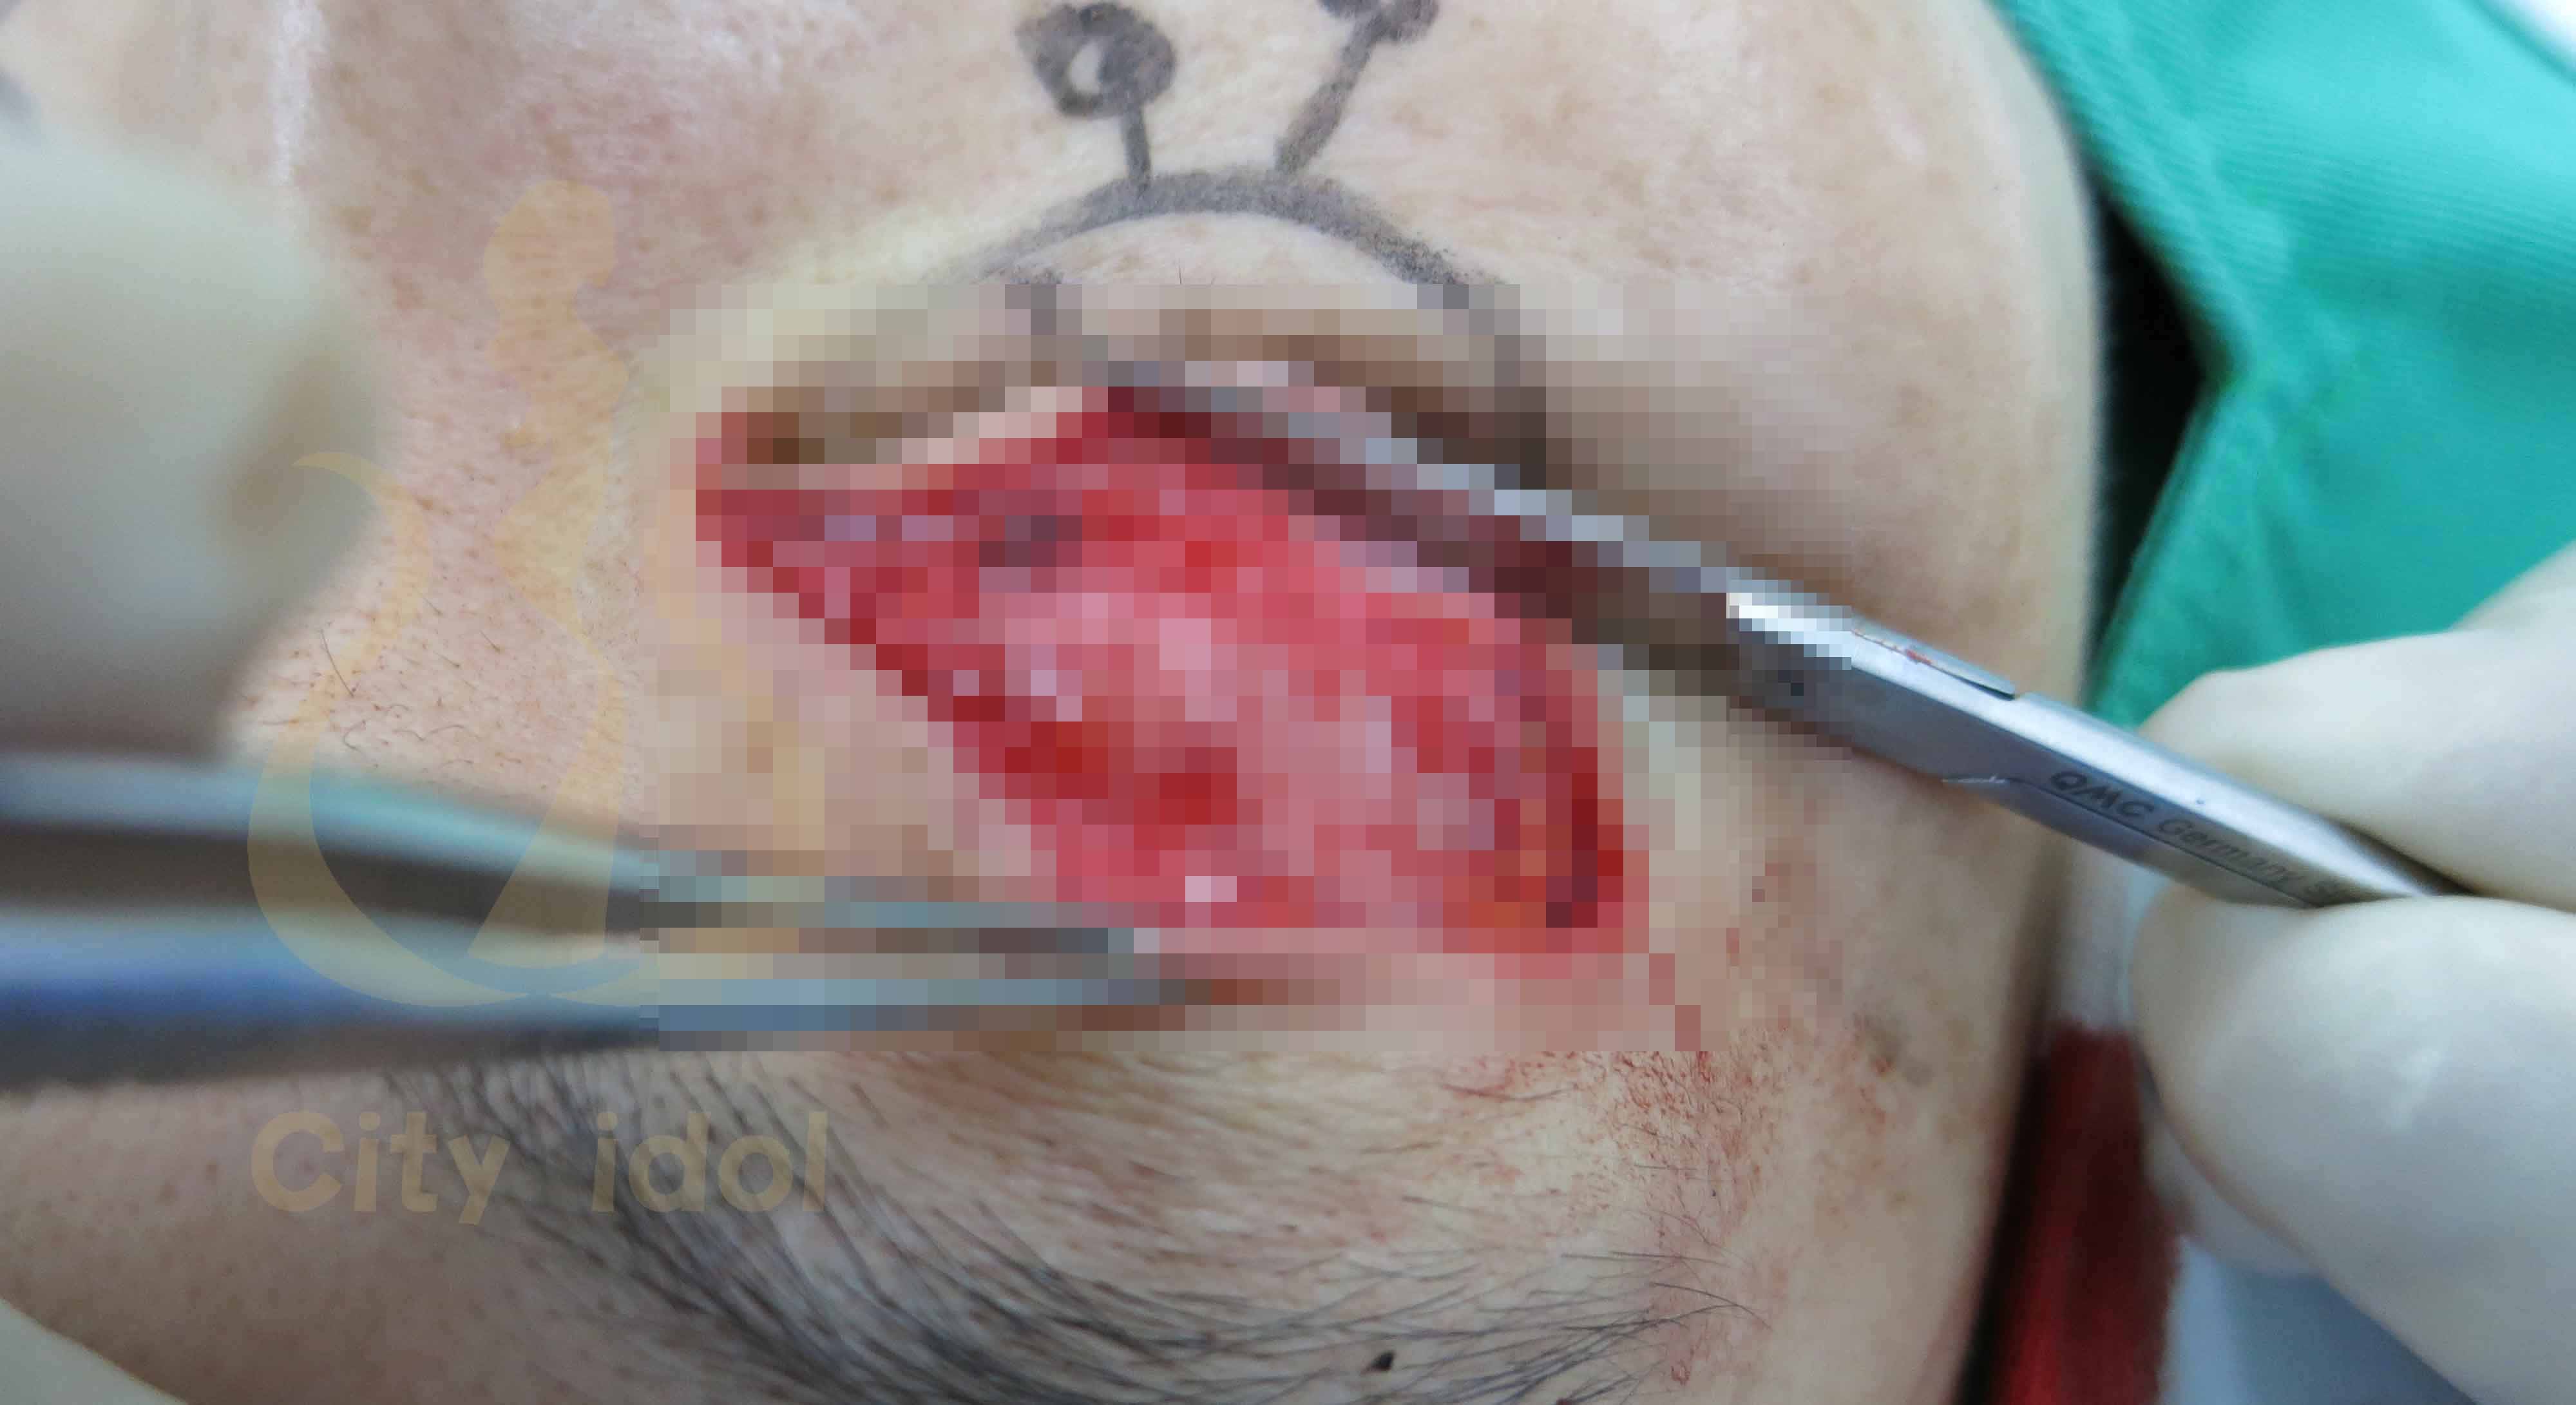 術 中 分 離 出 提 瞼 肌 及 施 行 提 臉 肌 摺 疊 手 術